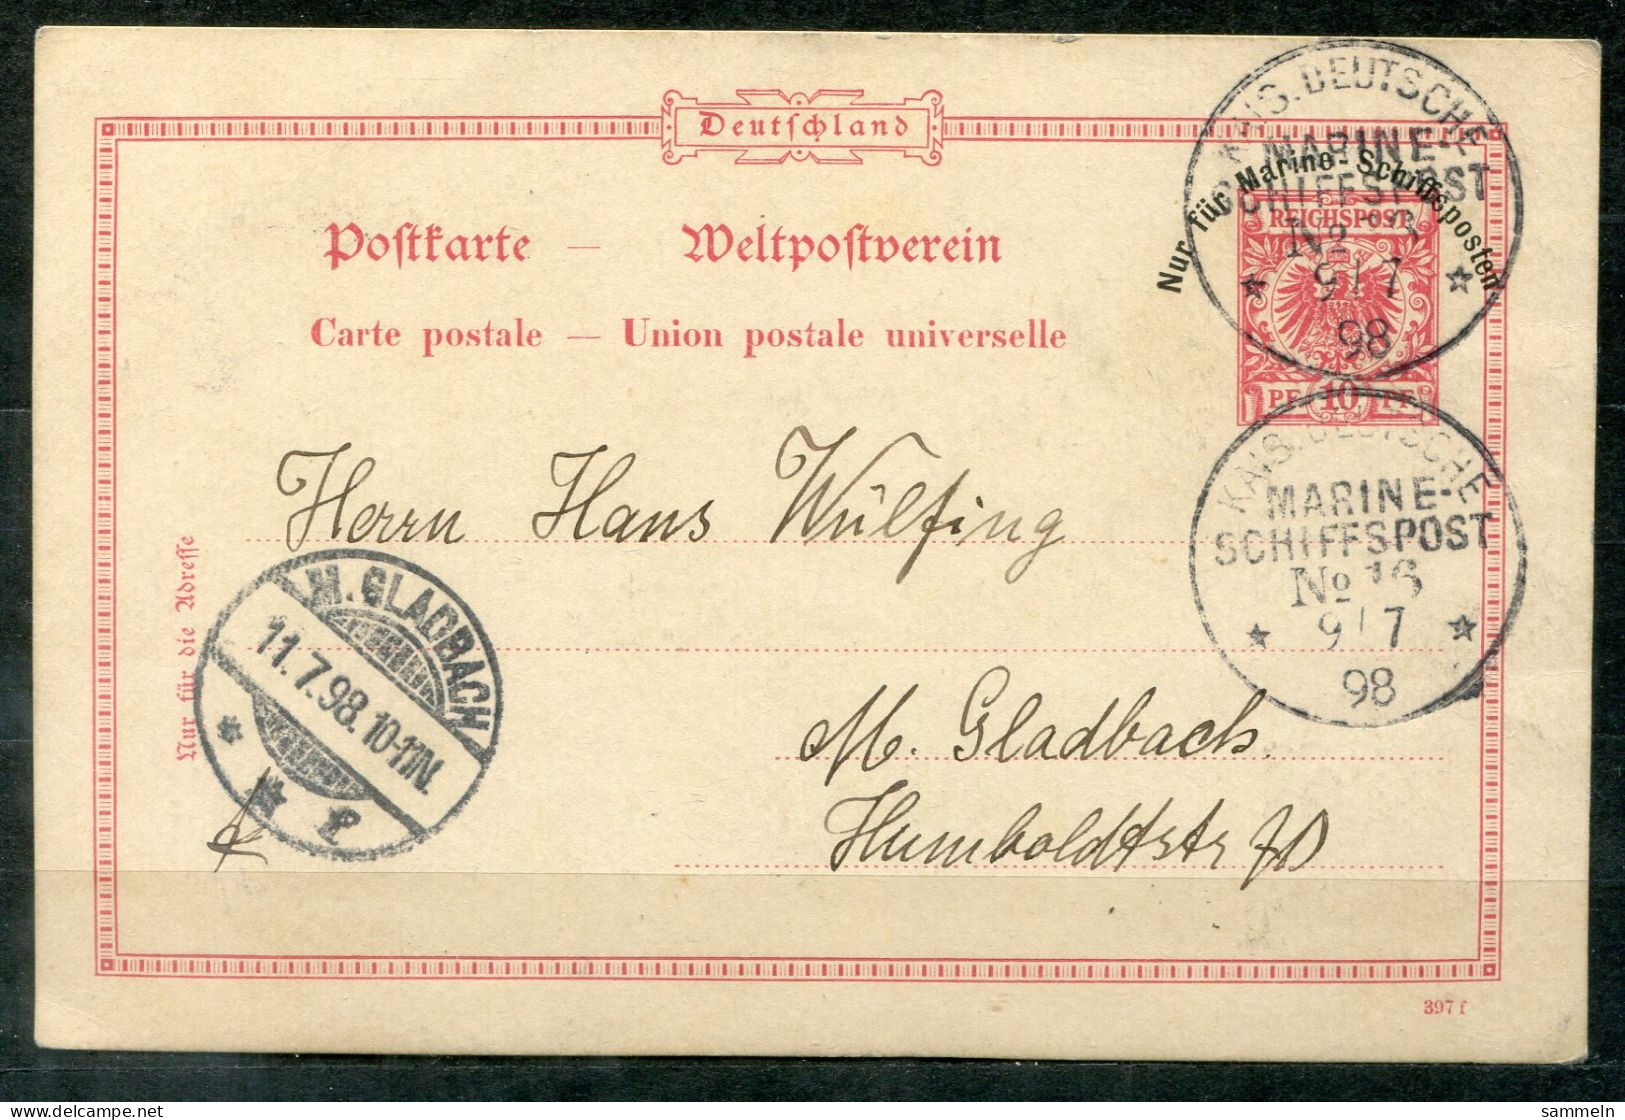 DEUTSCHES REICH - Schiffspost, Navire, Paquebot, Ship Letter, Stempel MARINE-SCHIFFSPOST No.16, 9.7.98 - Cartes Postales